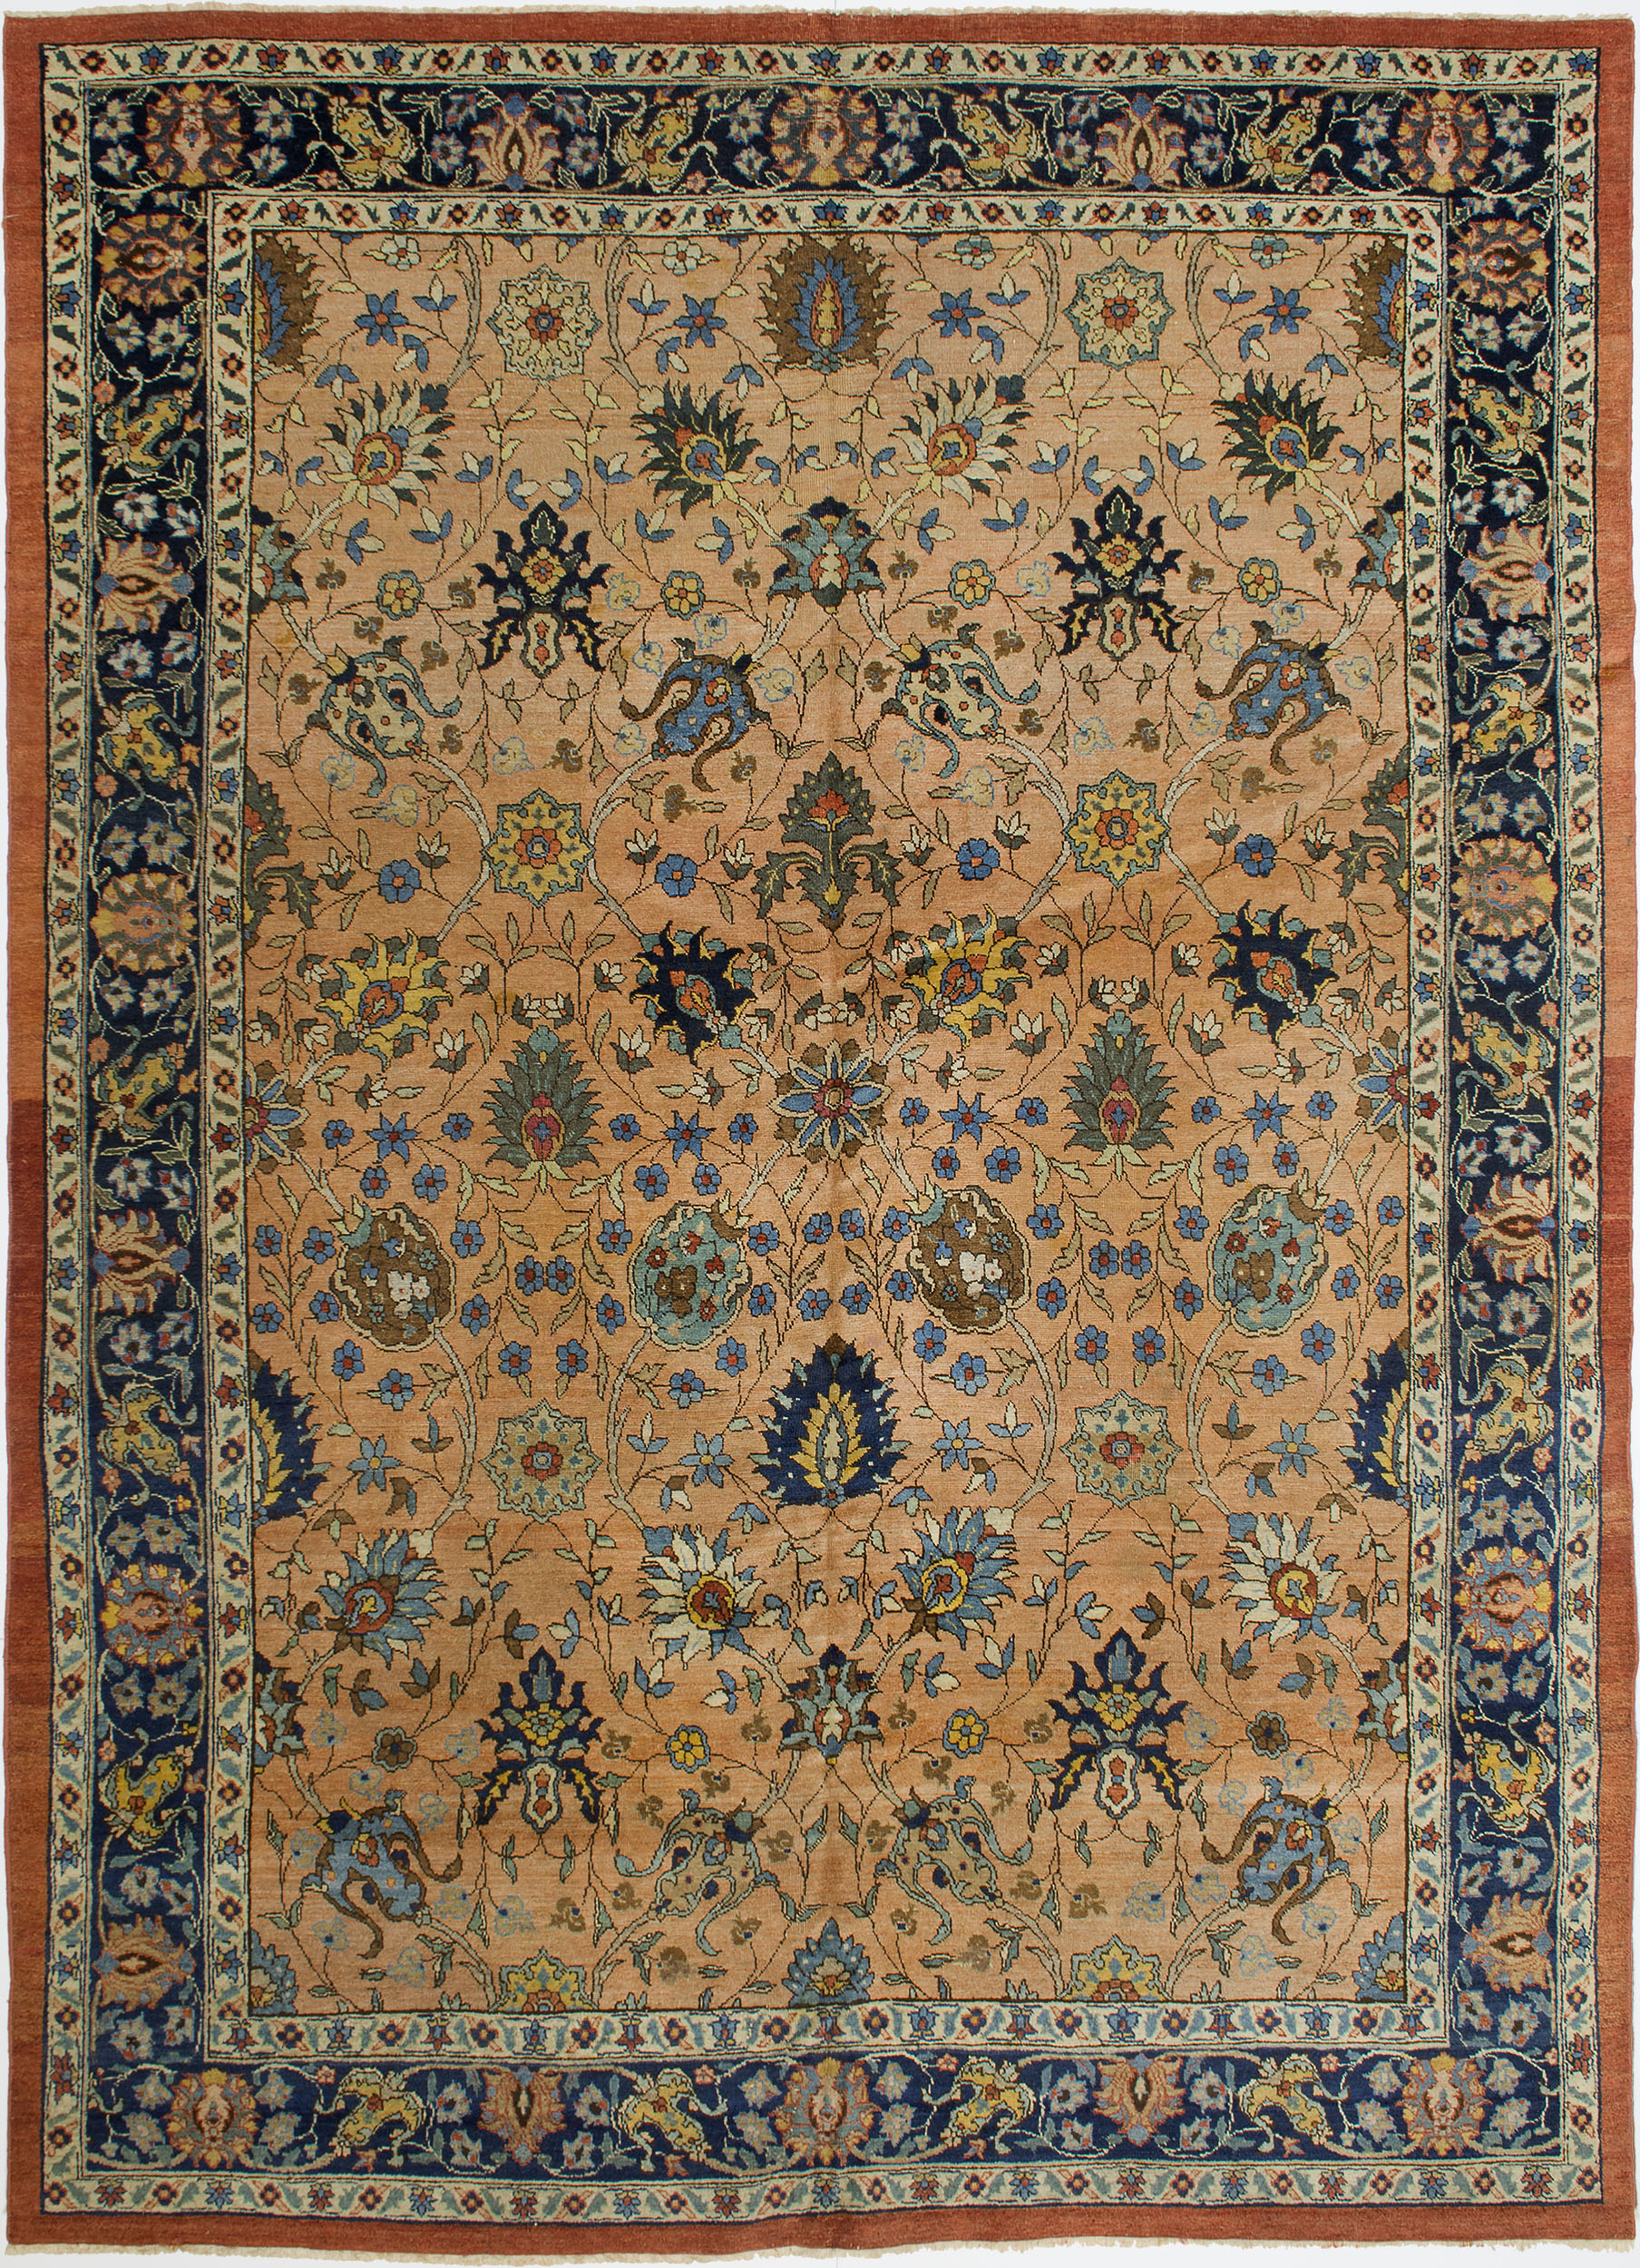 Tabriz Carpet 10' 11" x 8' 2" 